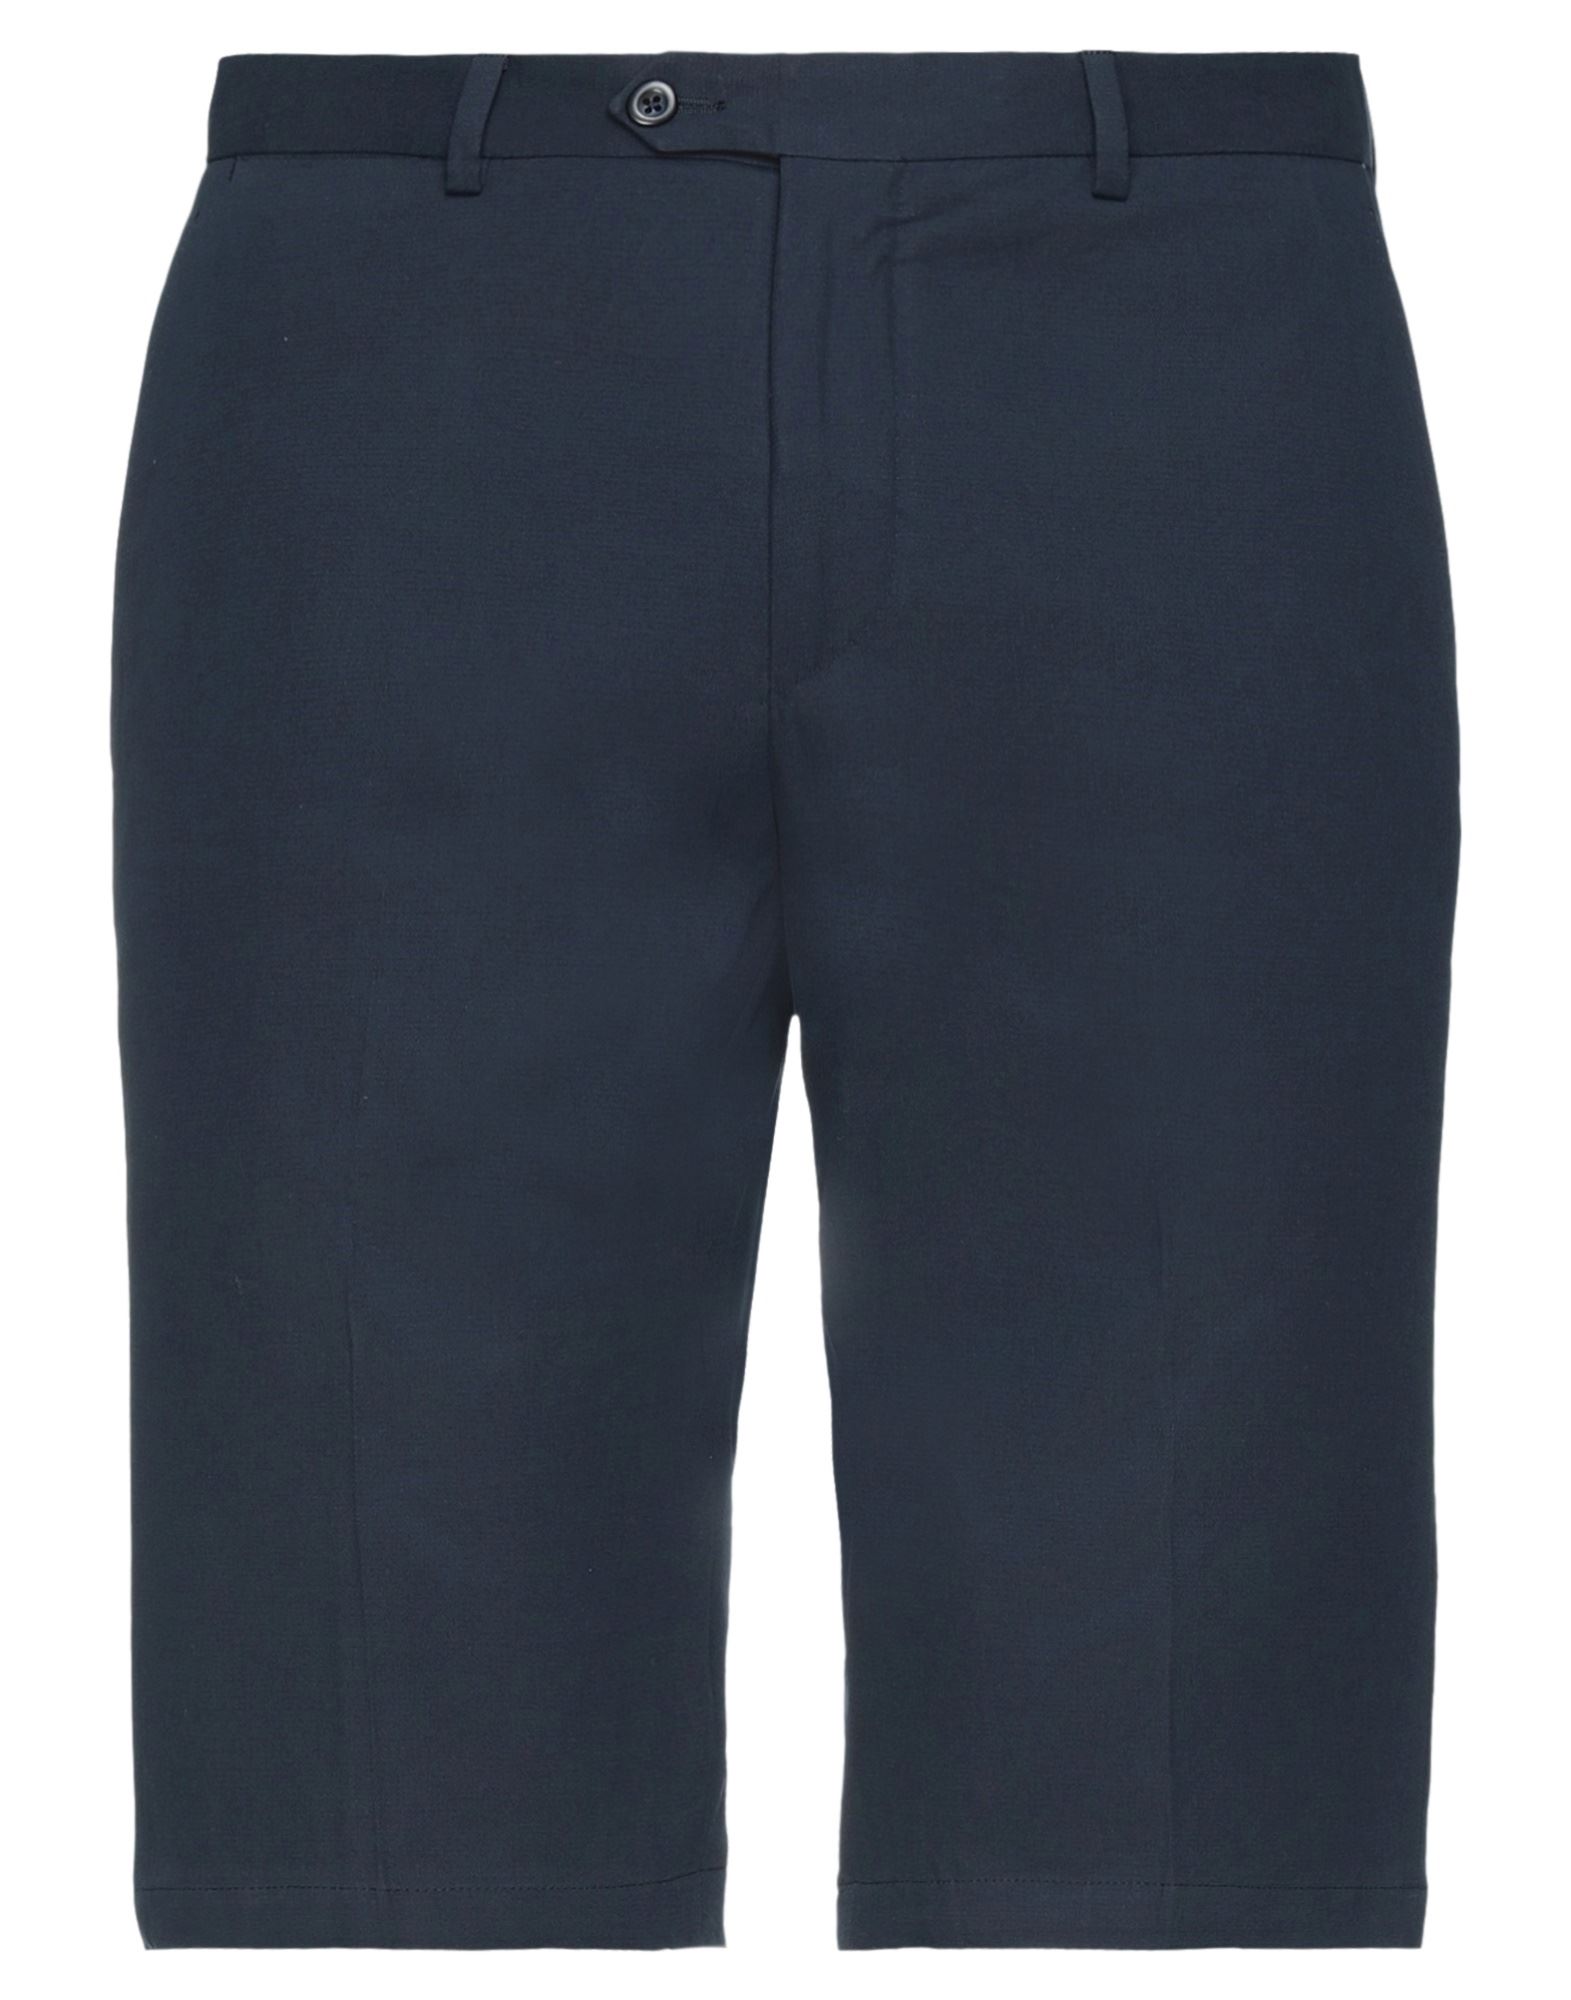 North Star '68 Man Shorts & Bermuda Shorts Midnight Blue Size 36 Cotton, Cashmere, Elastane